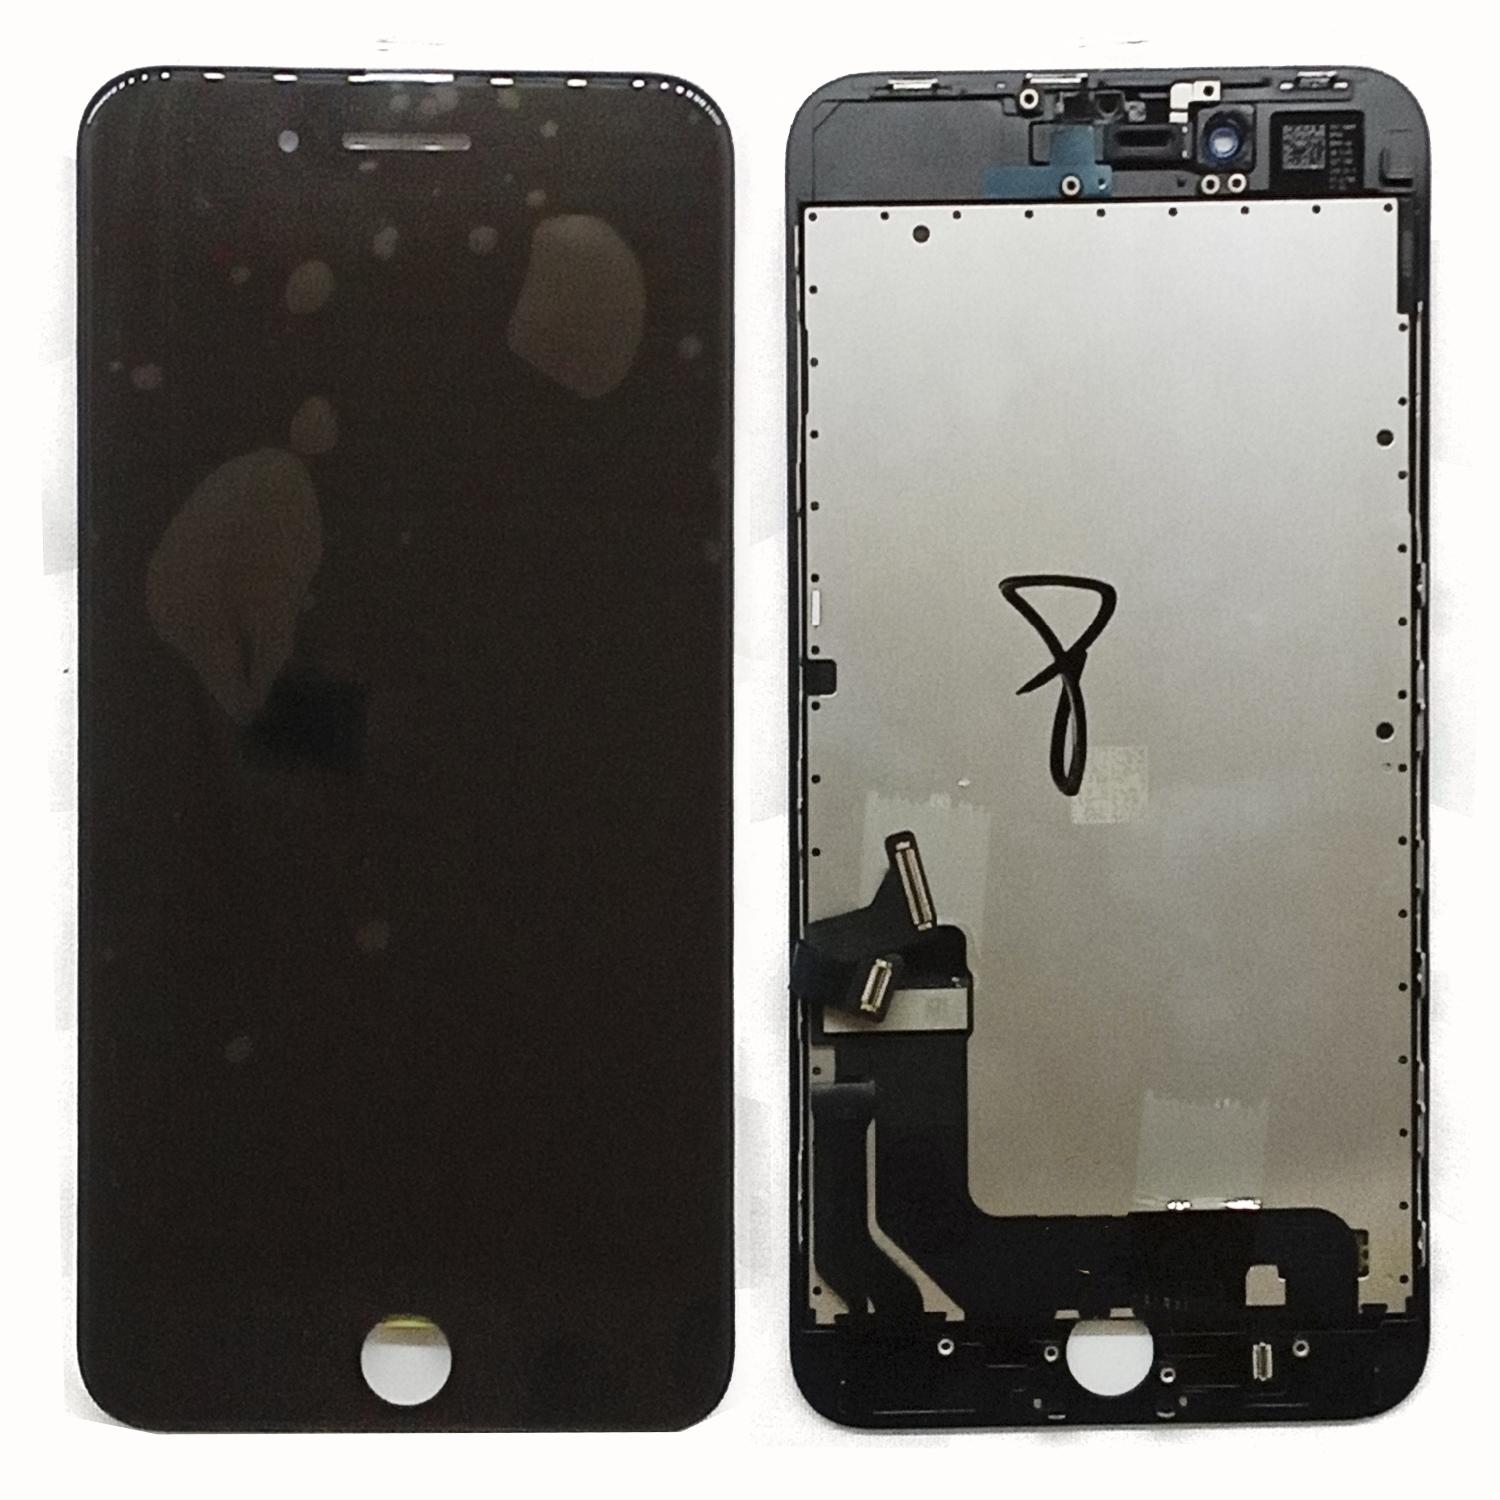 Модуль телефона iPhone 8 plus (дисплей+тачскрин) Rev DTP оригинал замененное стекло черный